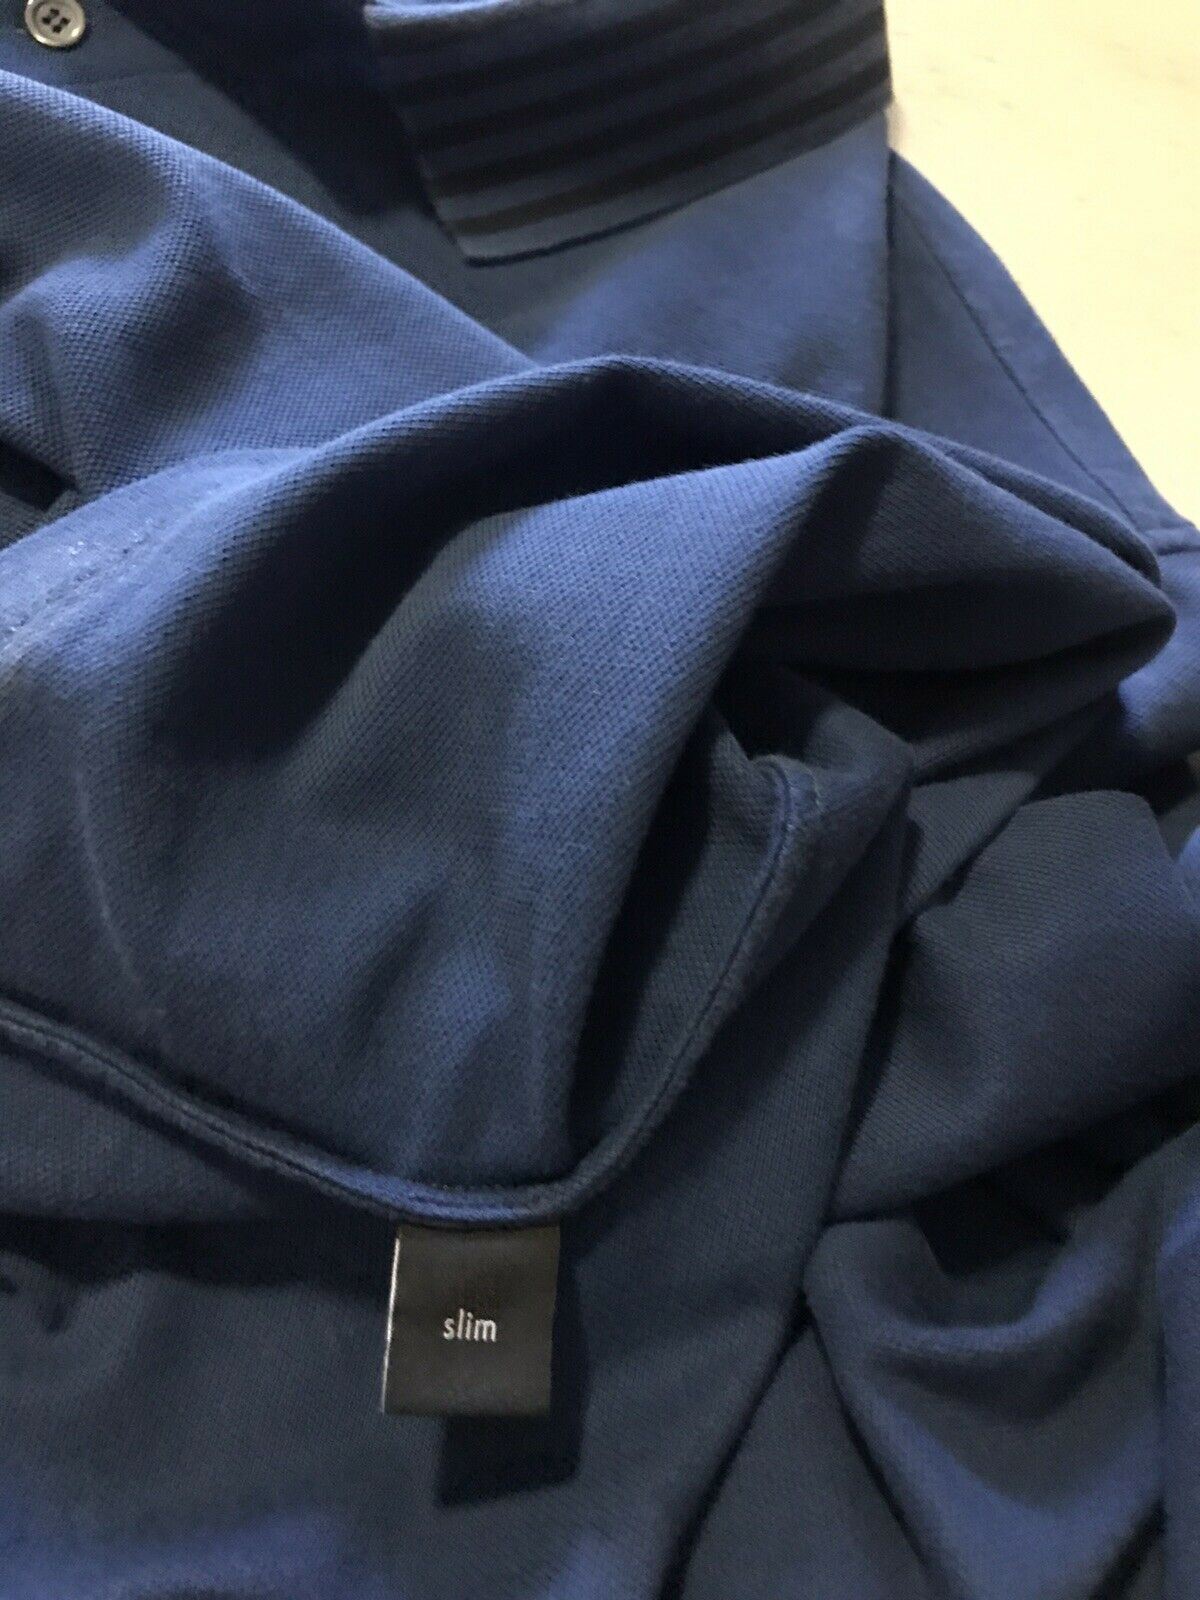 645 $ Gucci Herren-Poloshirt Slim Fit Blau Größe XXXL Italien